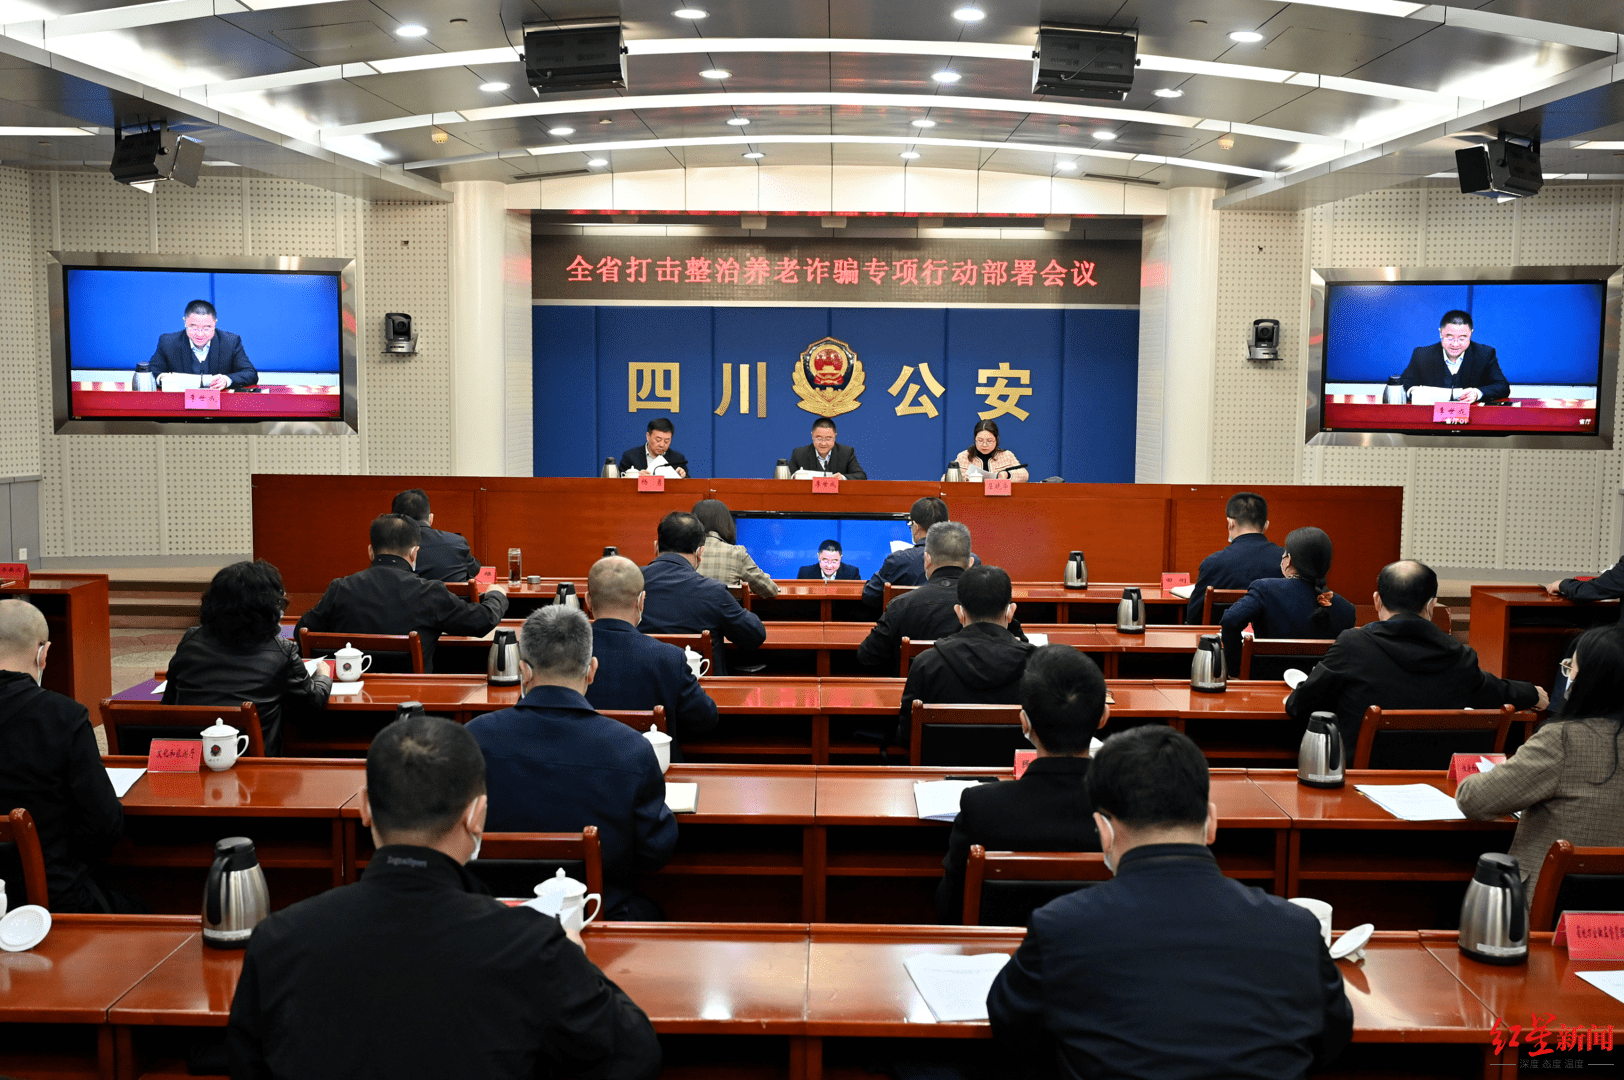 4月19日,四川召开全省打击整治养老诈骗专项行动部署会